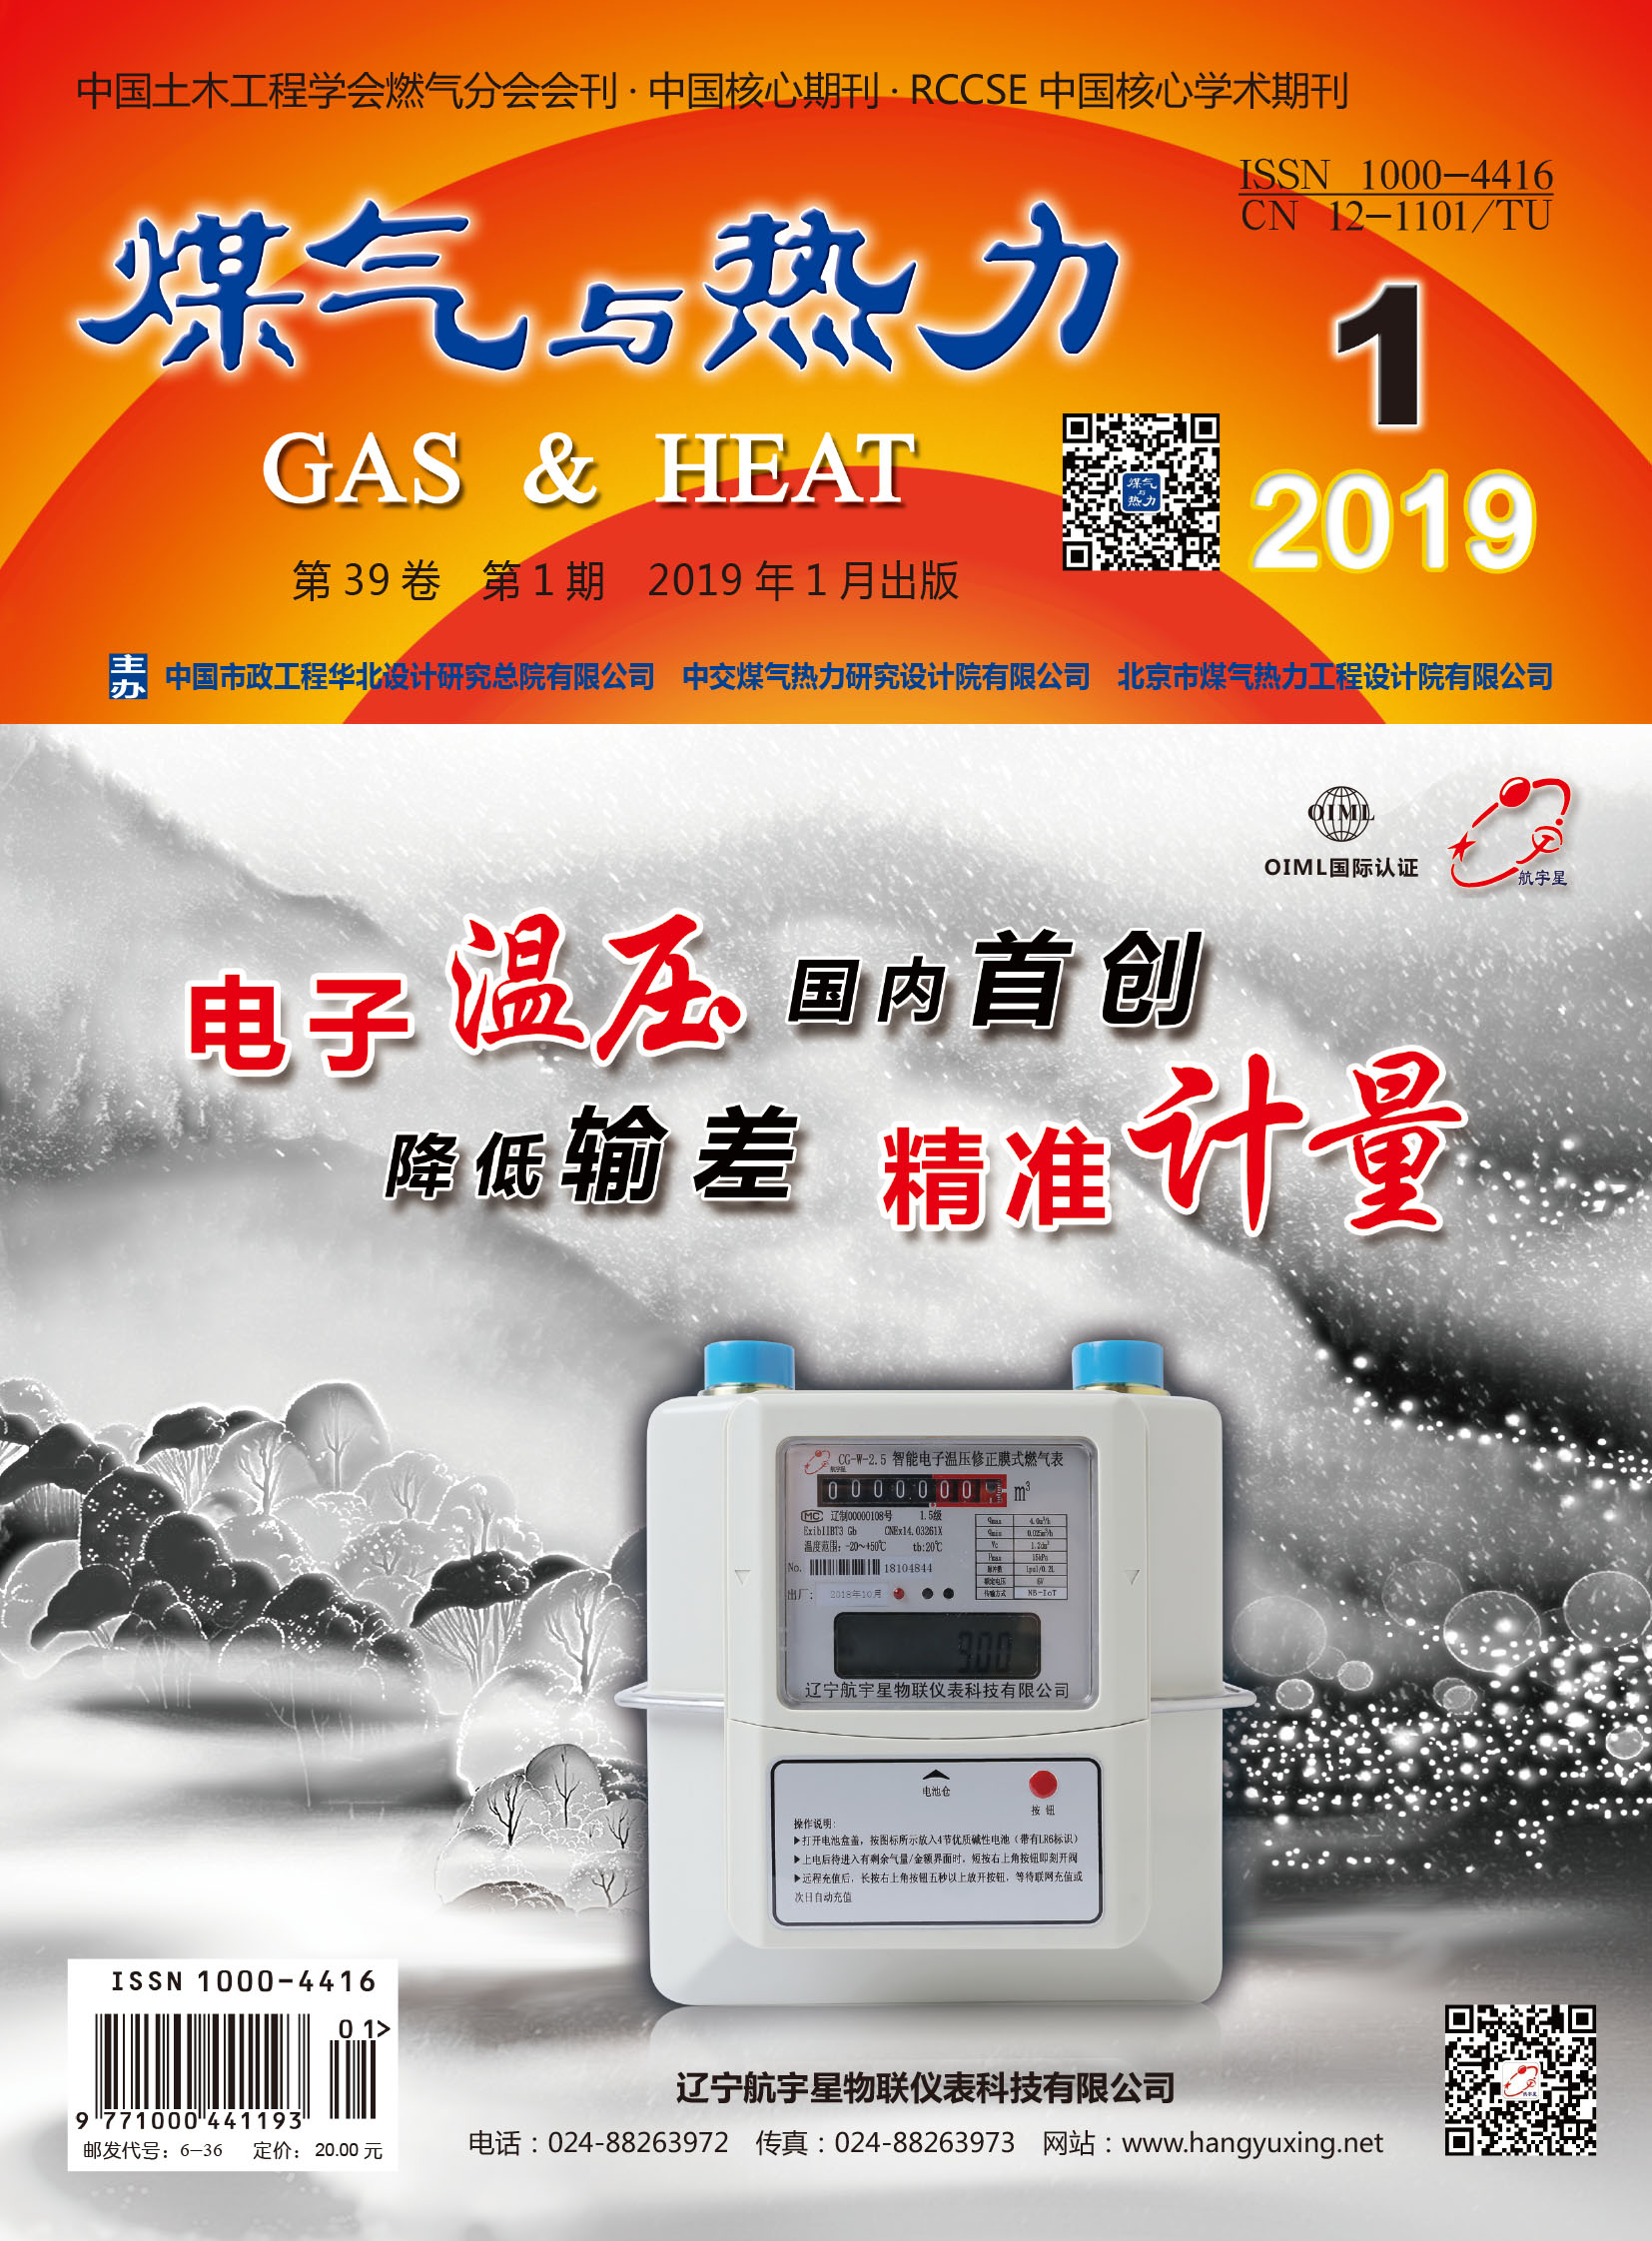 《煤气与热力》2019年1月刊